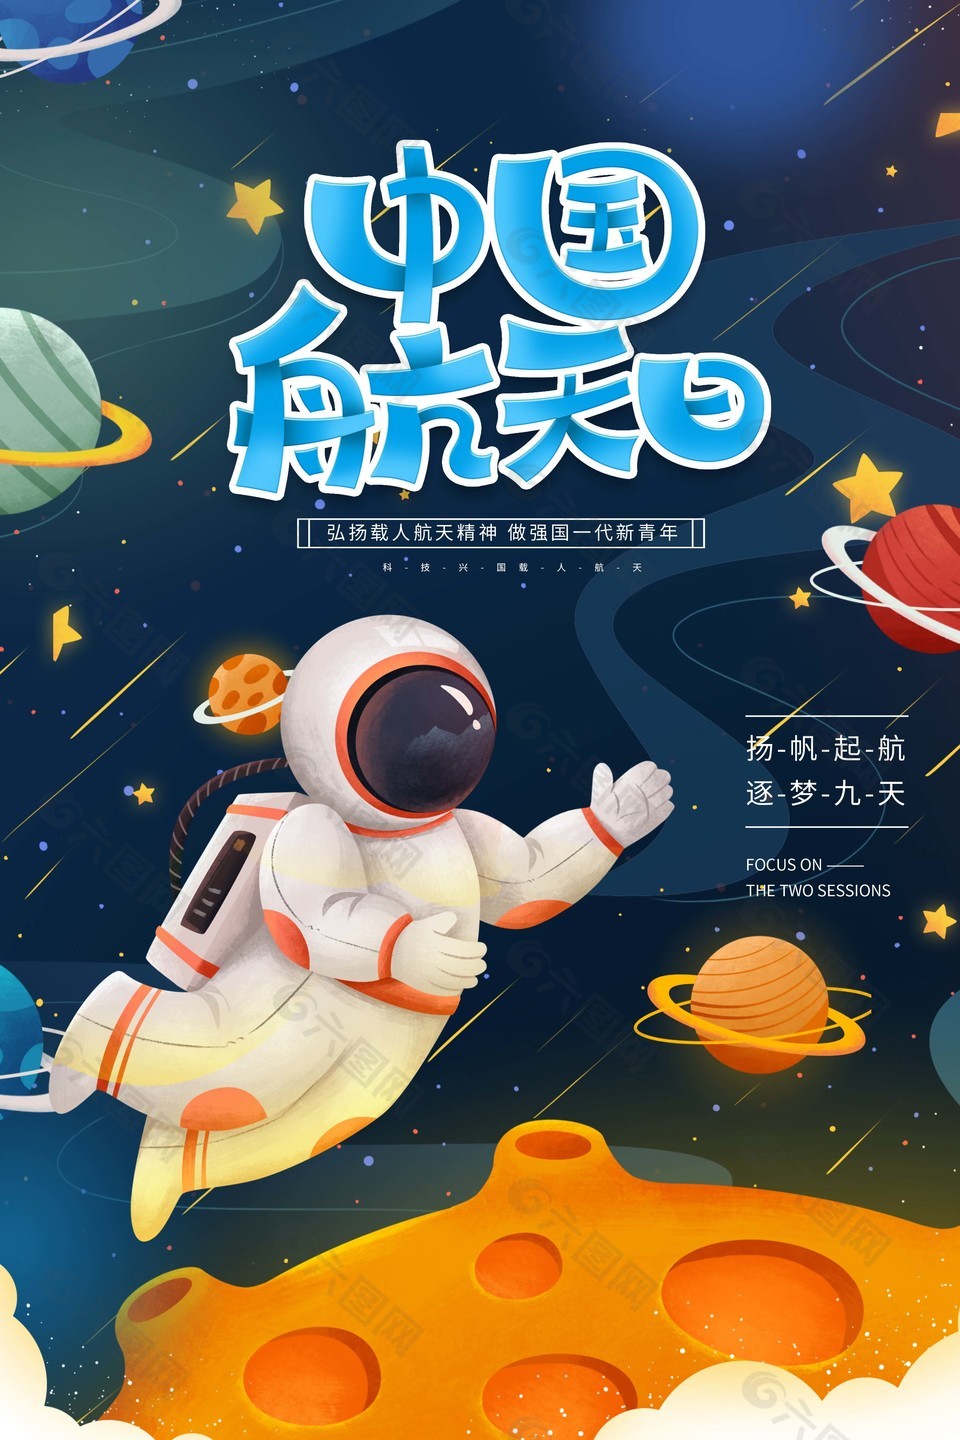 中国航天日Q版宇航员插画海报图片下载